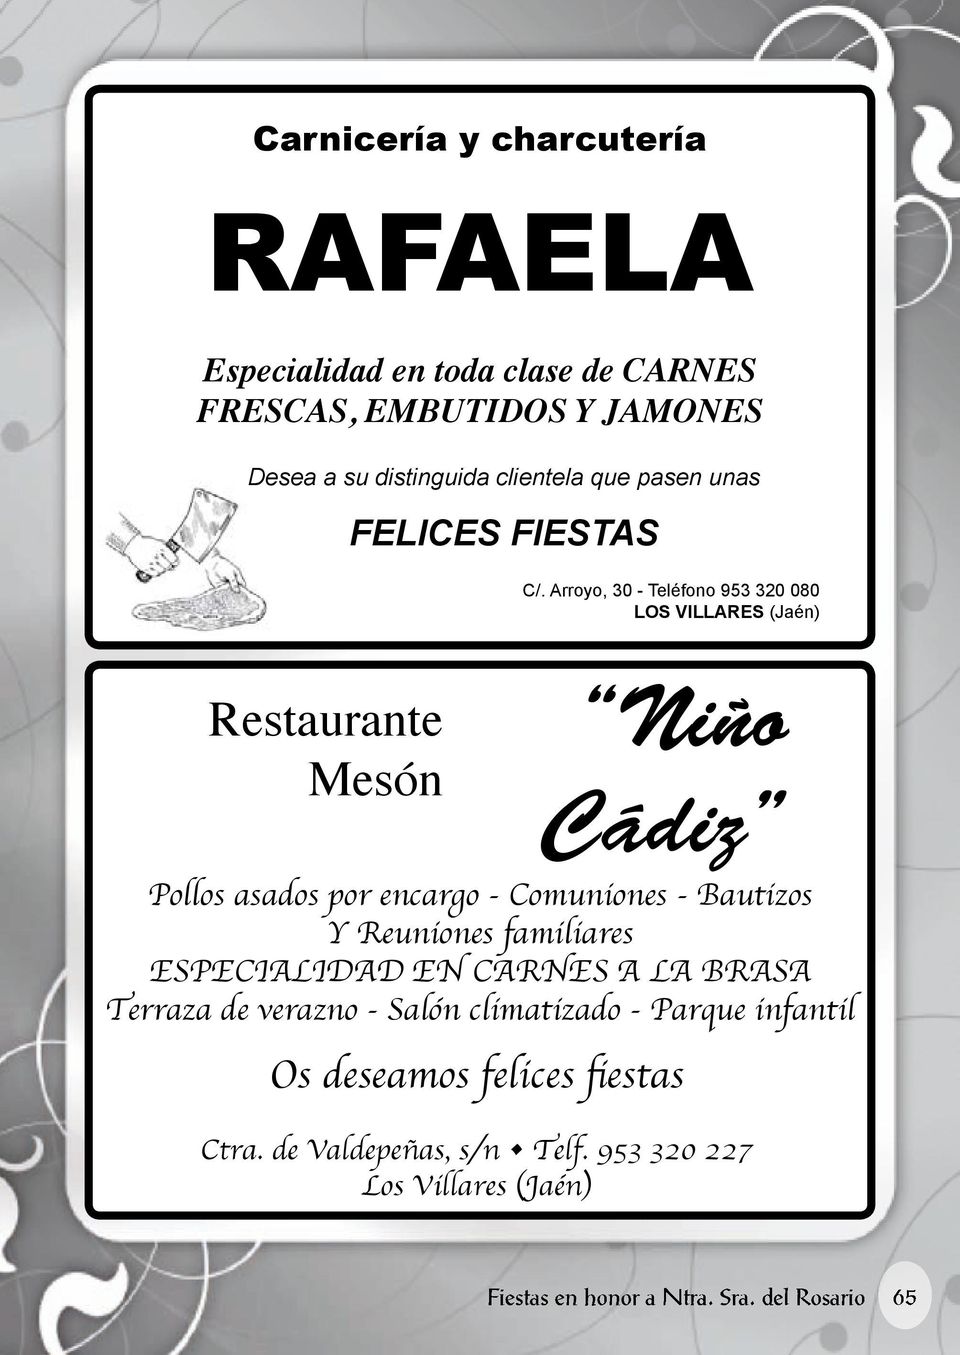 Arroyo, 30 - Teléfono 953 320 080 LOS VILLARES (Jaén) Restaurante Mesón Niño Cádiz Pollos asados por encargo - Comuniones - Bautizos Y